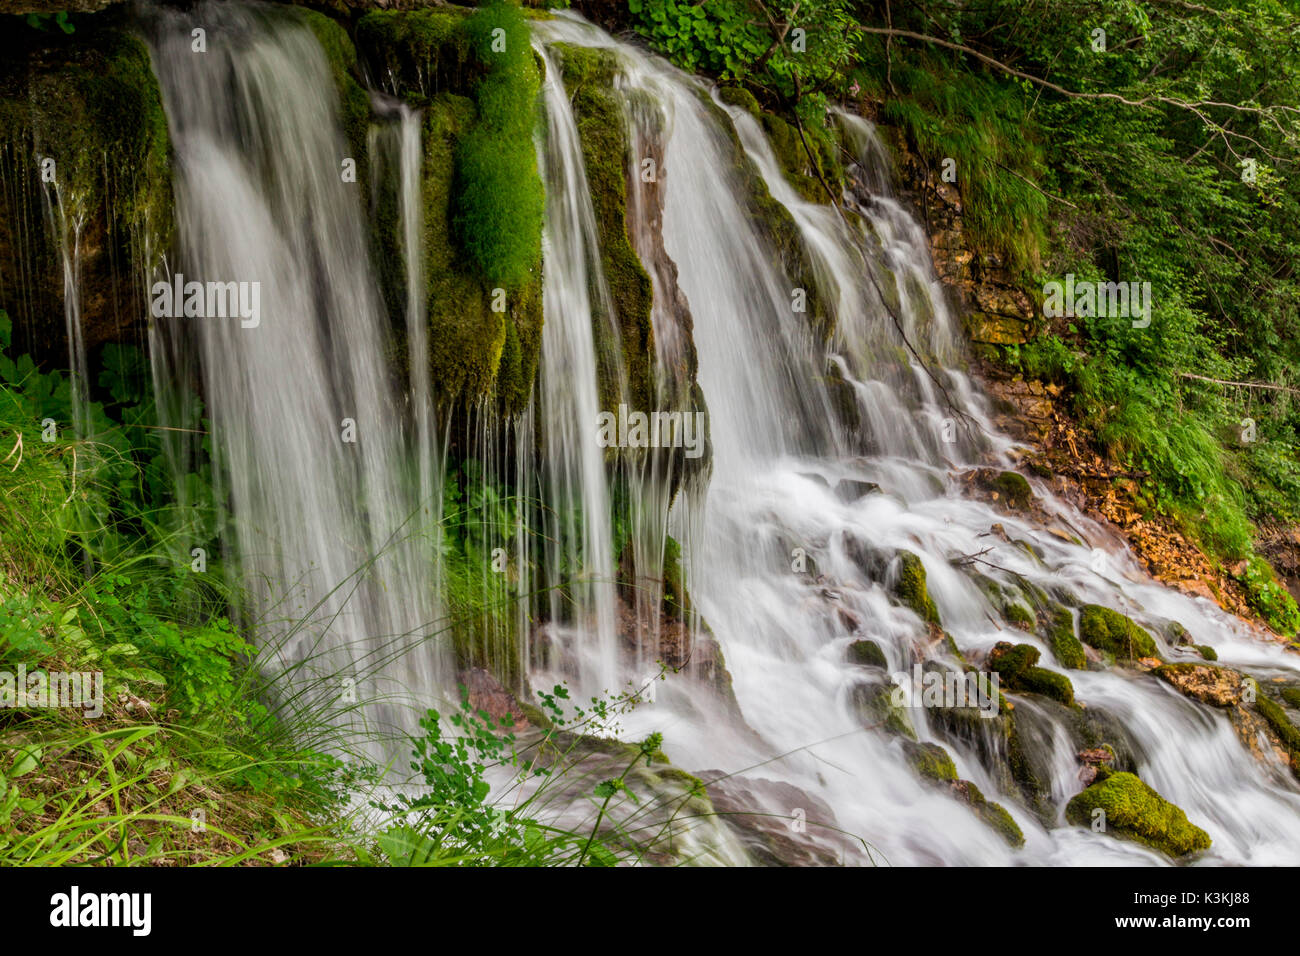 Ephemere Wasserfall im Tal von San Lucano, Agordino, Dolomiten. Das Wasser scheint aus dem Herzen der Berge zu fließen. Rund um das grüne Moos und Pflanzen Merkmal von Feuchtgebieten. Stockfoto